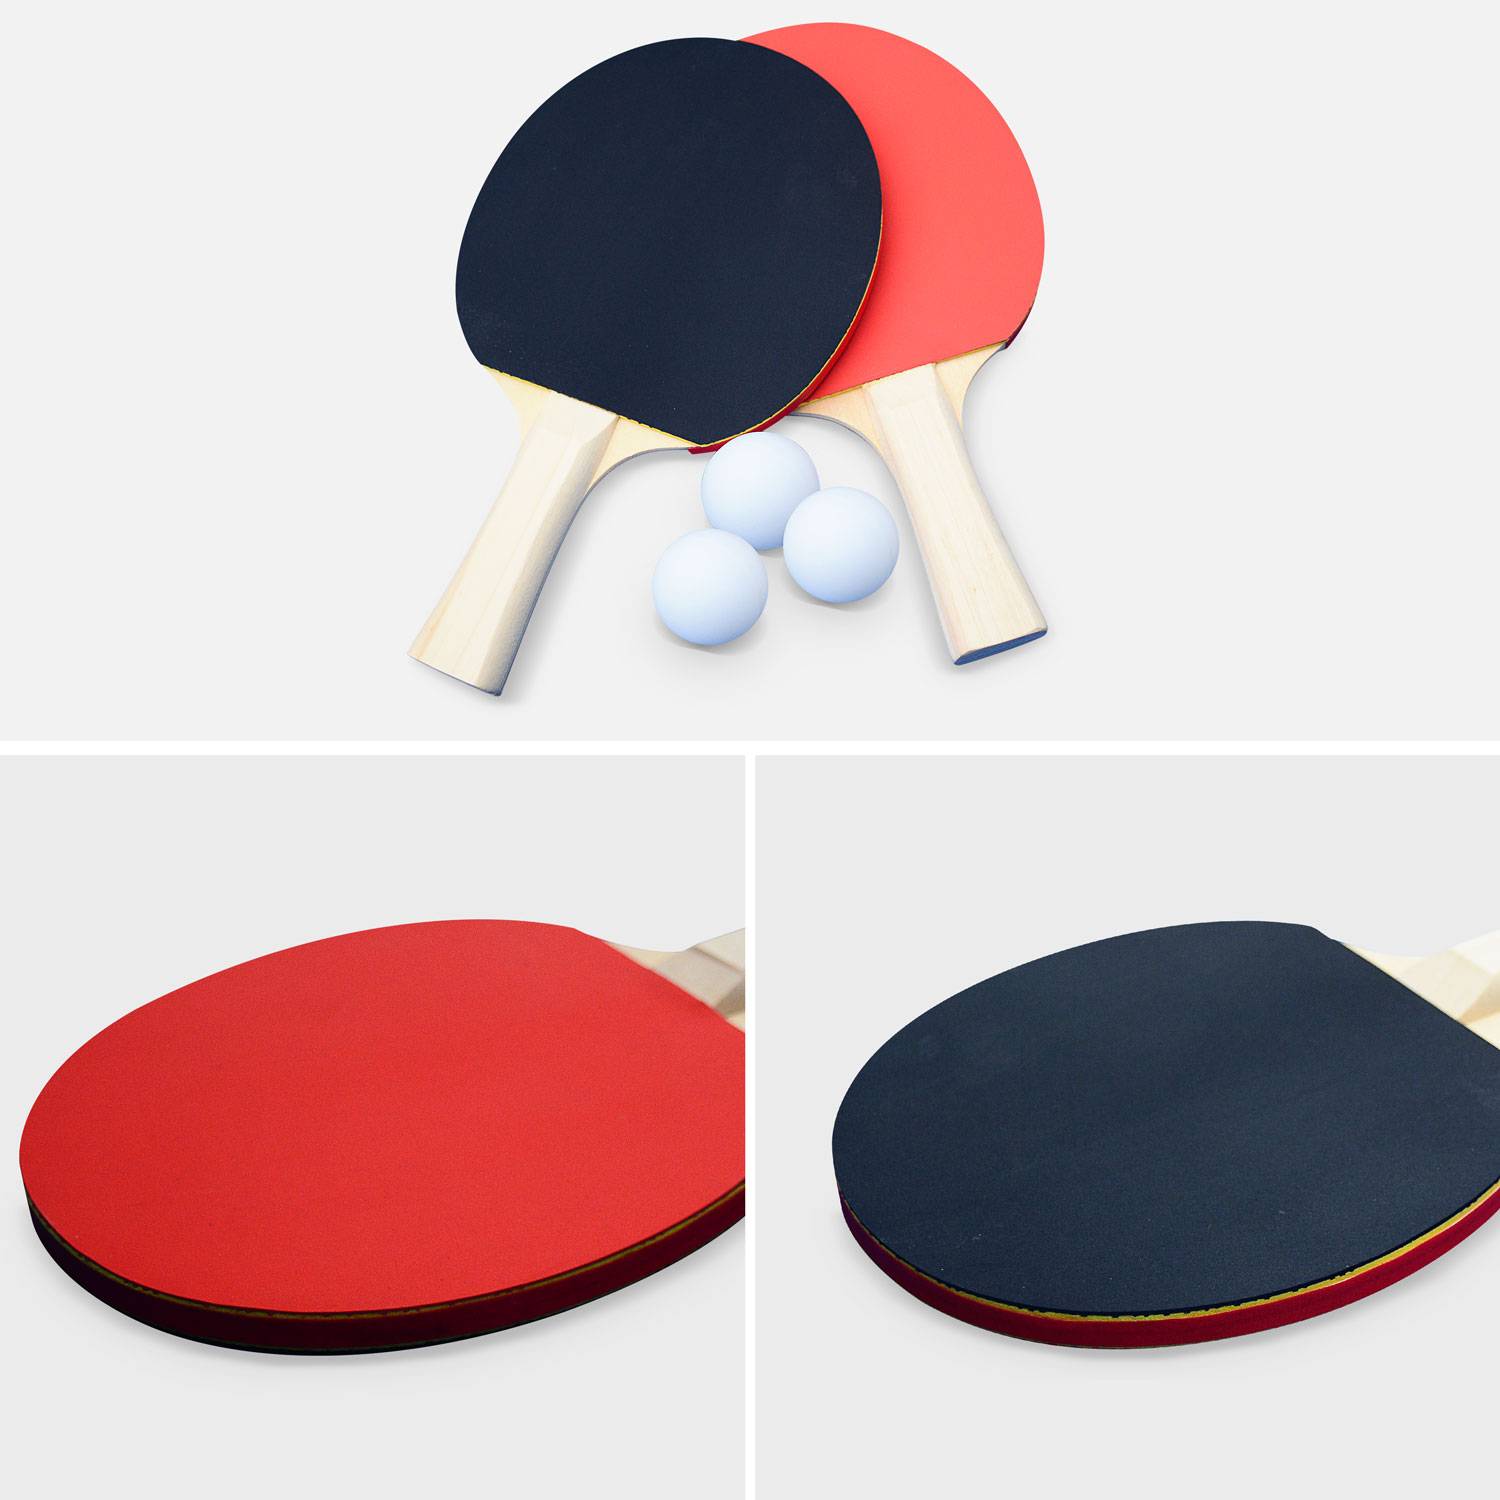 Table de ping pong OUTDOOR bleue avec housse de protection, table pliable avec 2 raquettes et 3 balles, pour utilisation extérieure, sport tennis de table Photo5